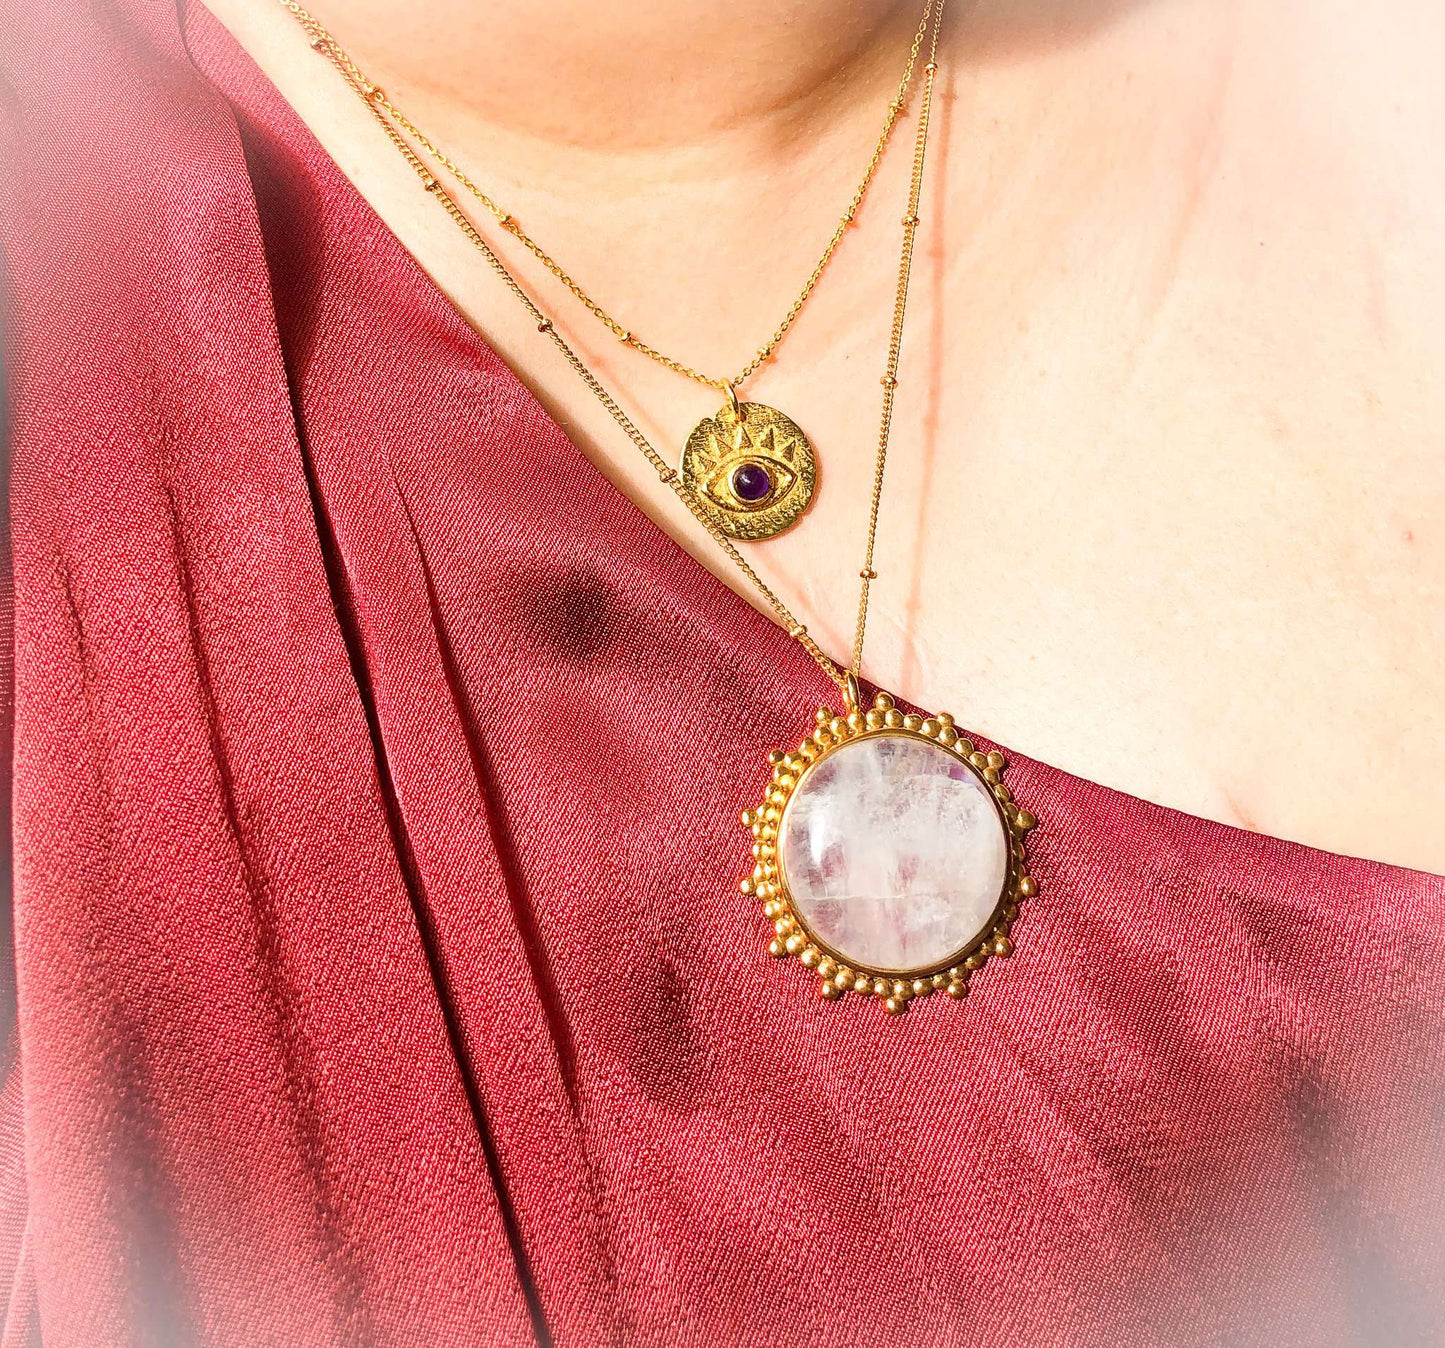 Moon rainstone necklace on female model